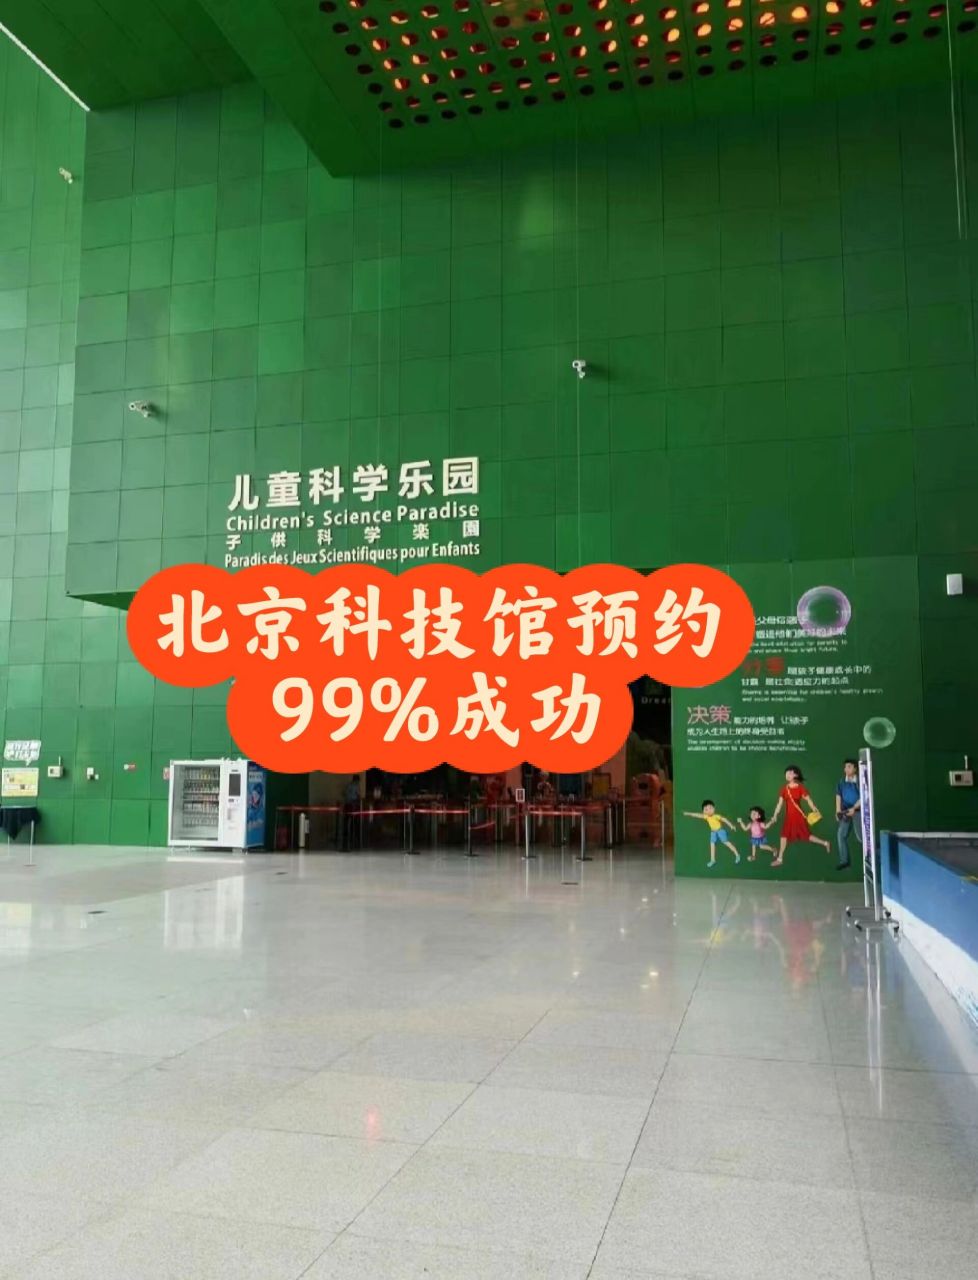 北京科技馆预约99%成功的小技巧 号称最难约的中国科技馆预约技巧